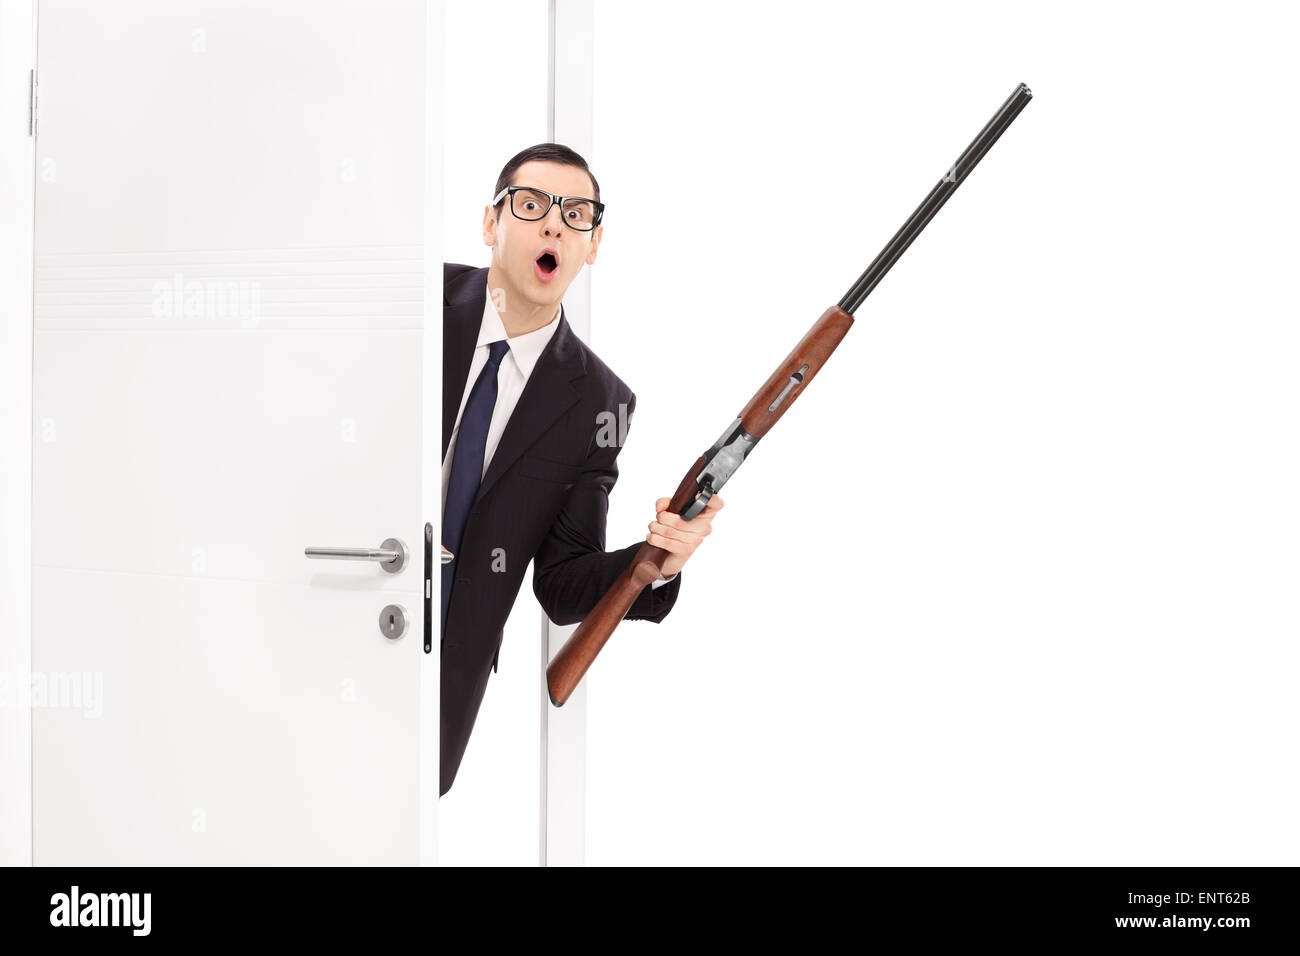 Homme en colère dans un costume noir tenant un fusil carabine et entrer dans une pièce isolé sur fond blanc Banque D'Images